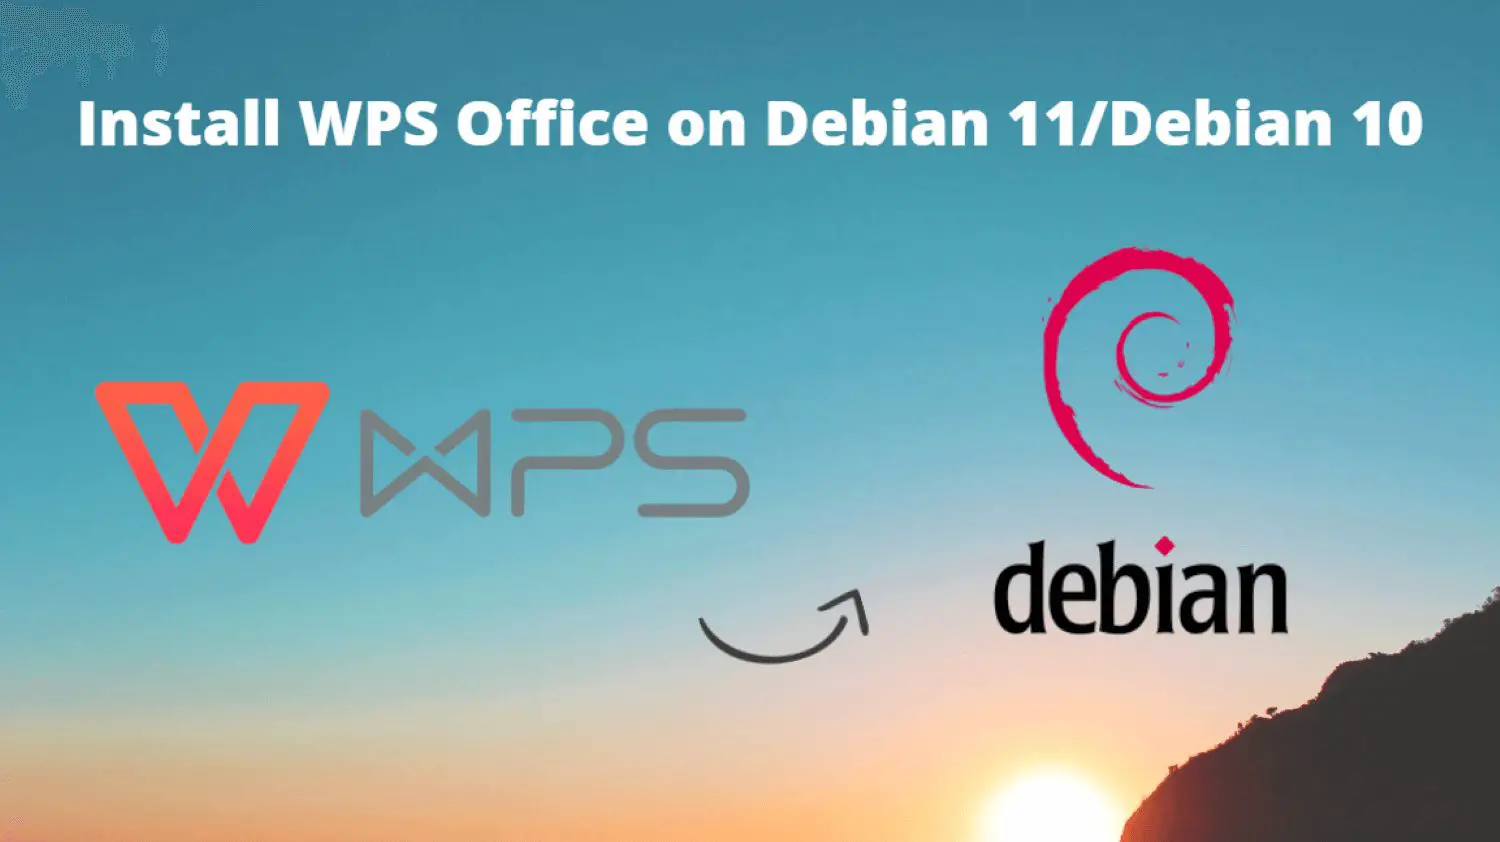 Install WPS Office on Debian 11/Debian 10